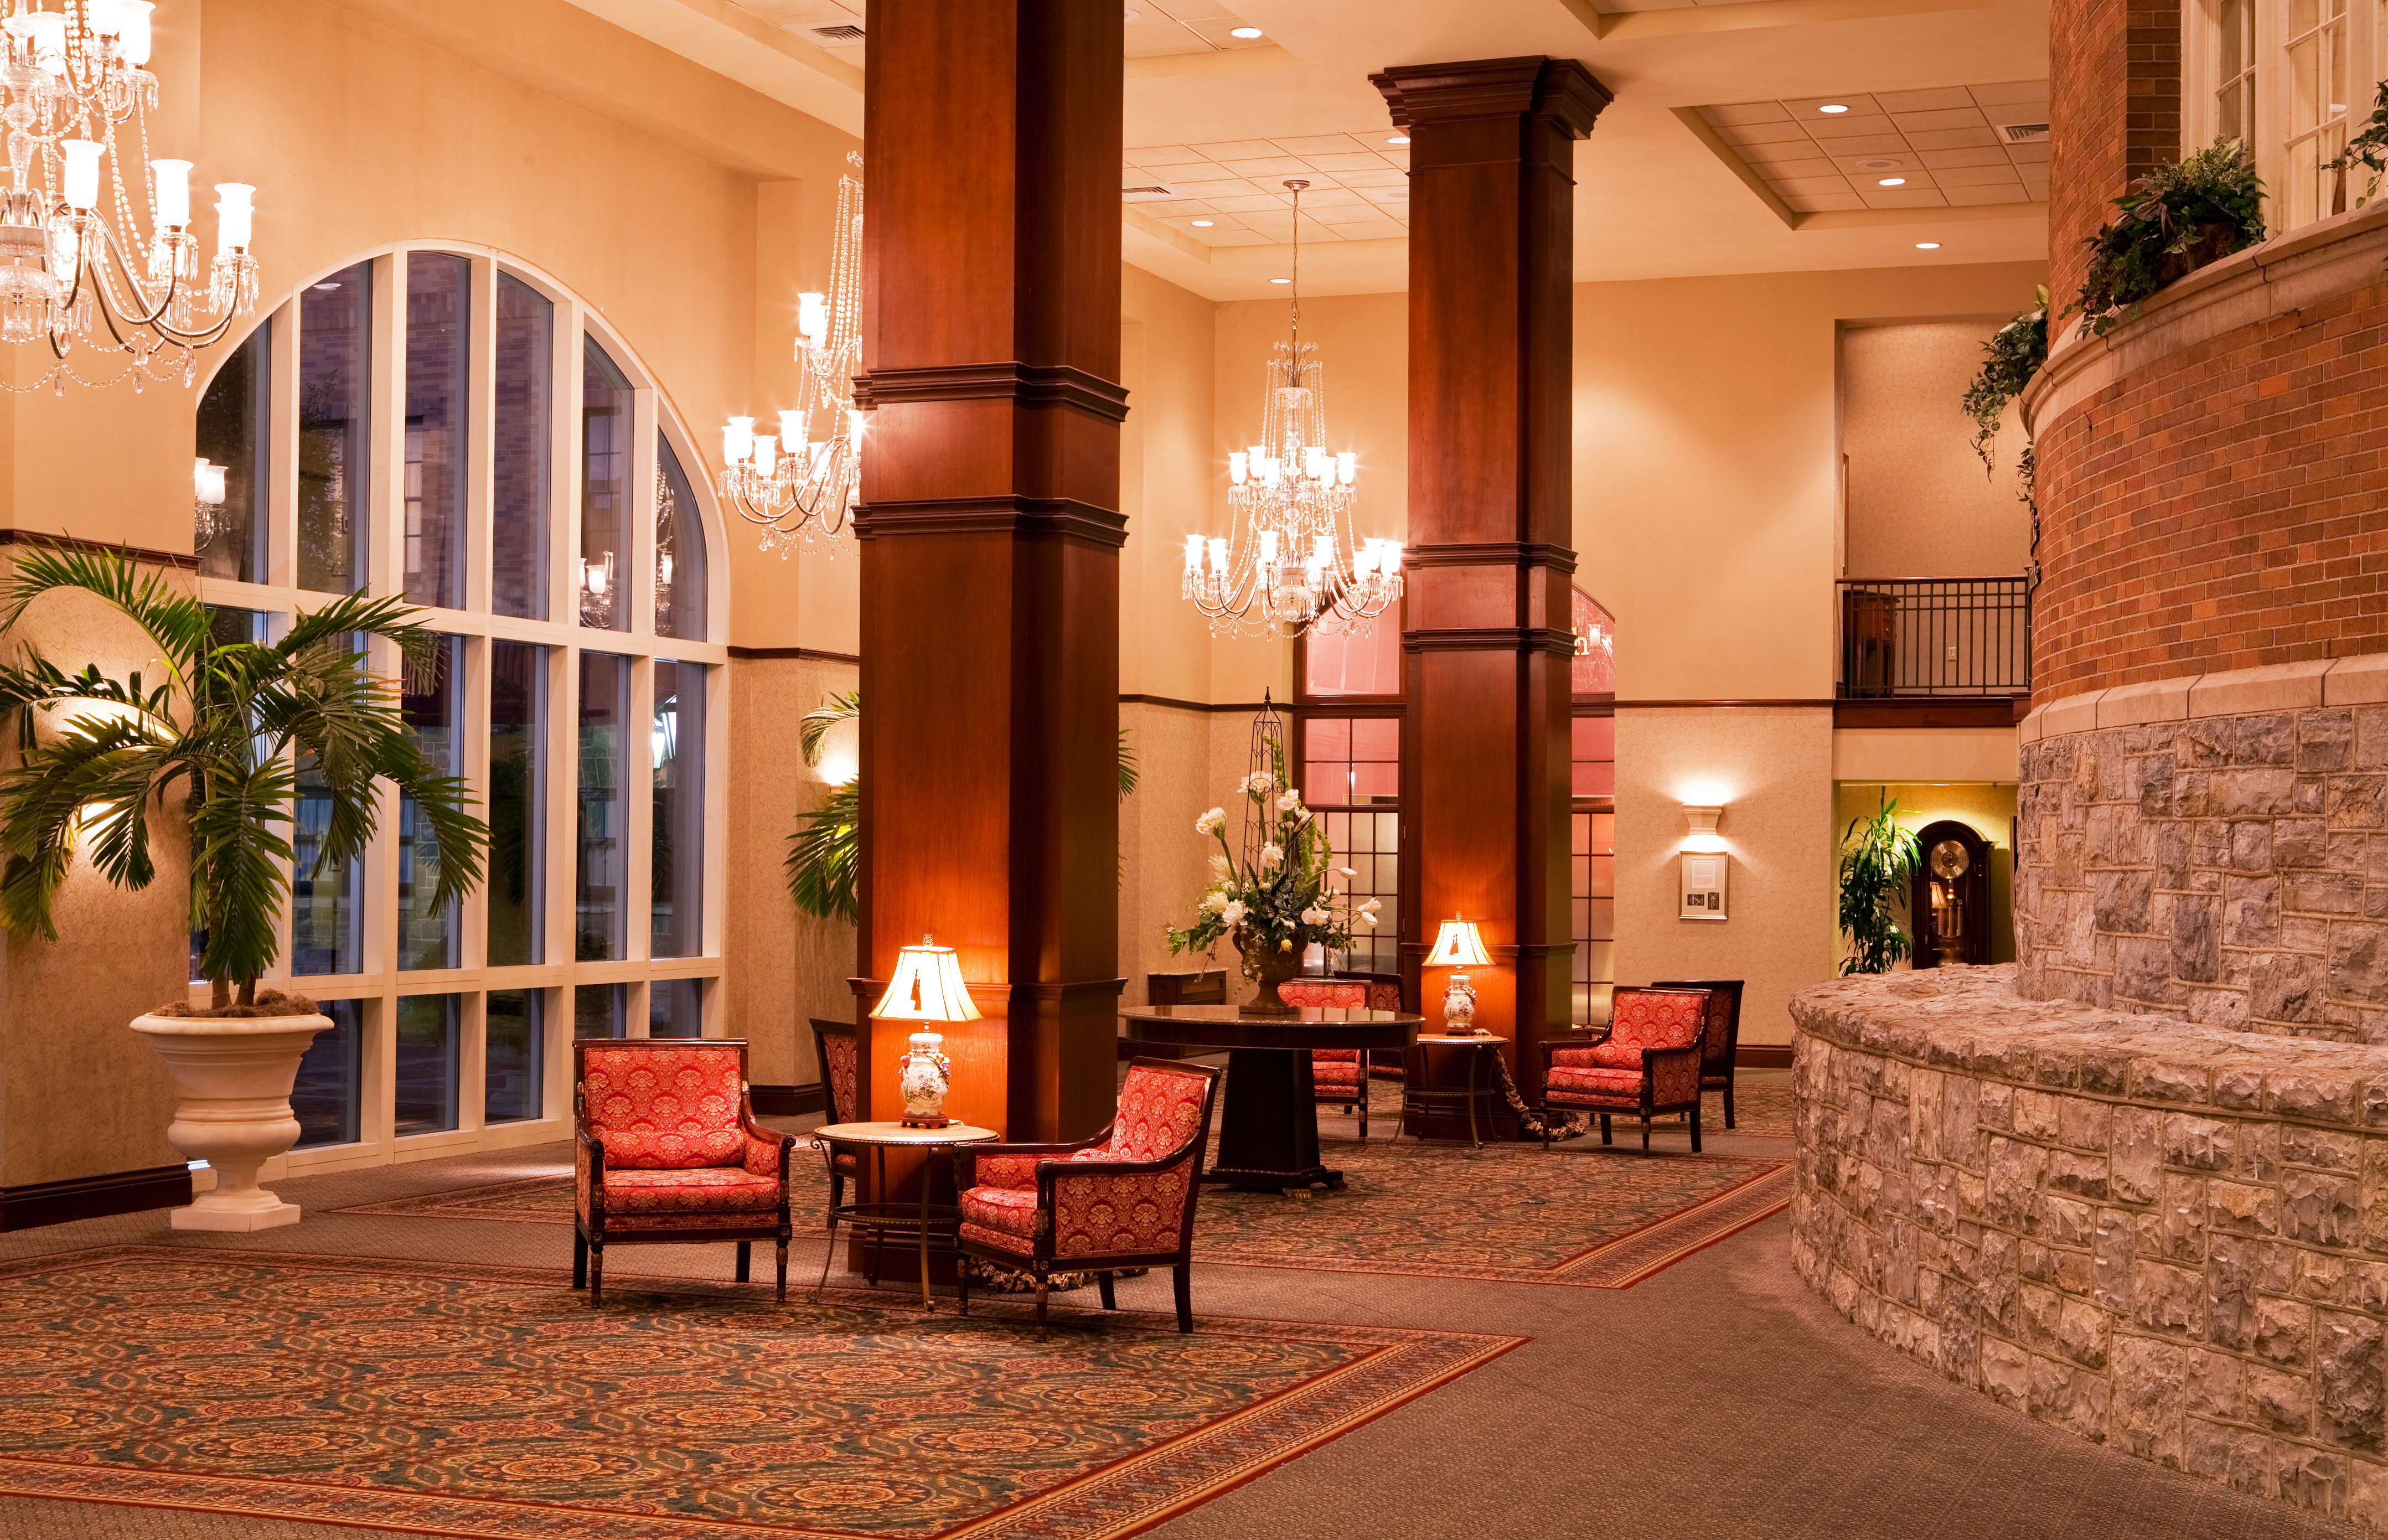 The Hotel Roanoke Foyer